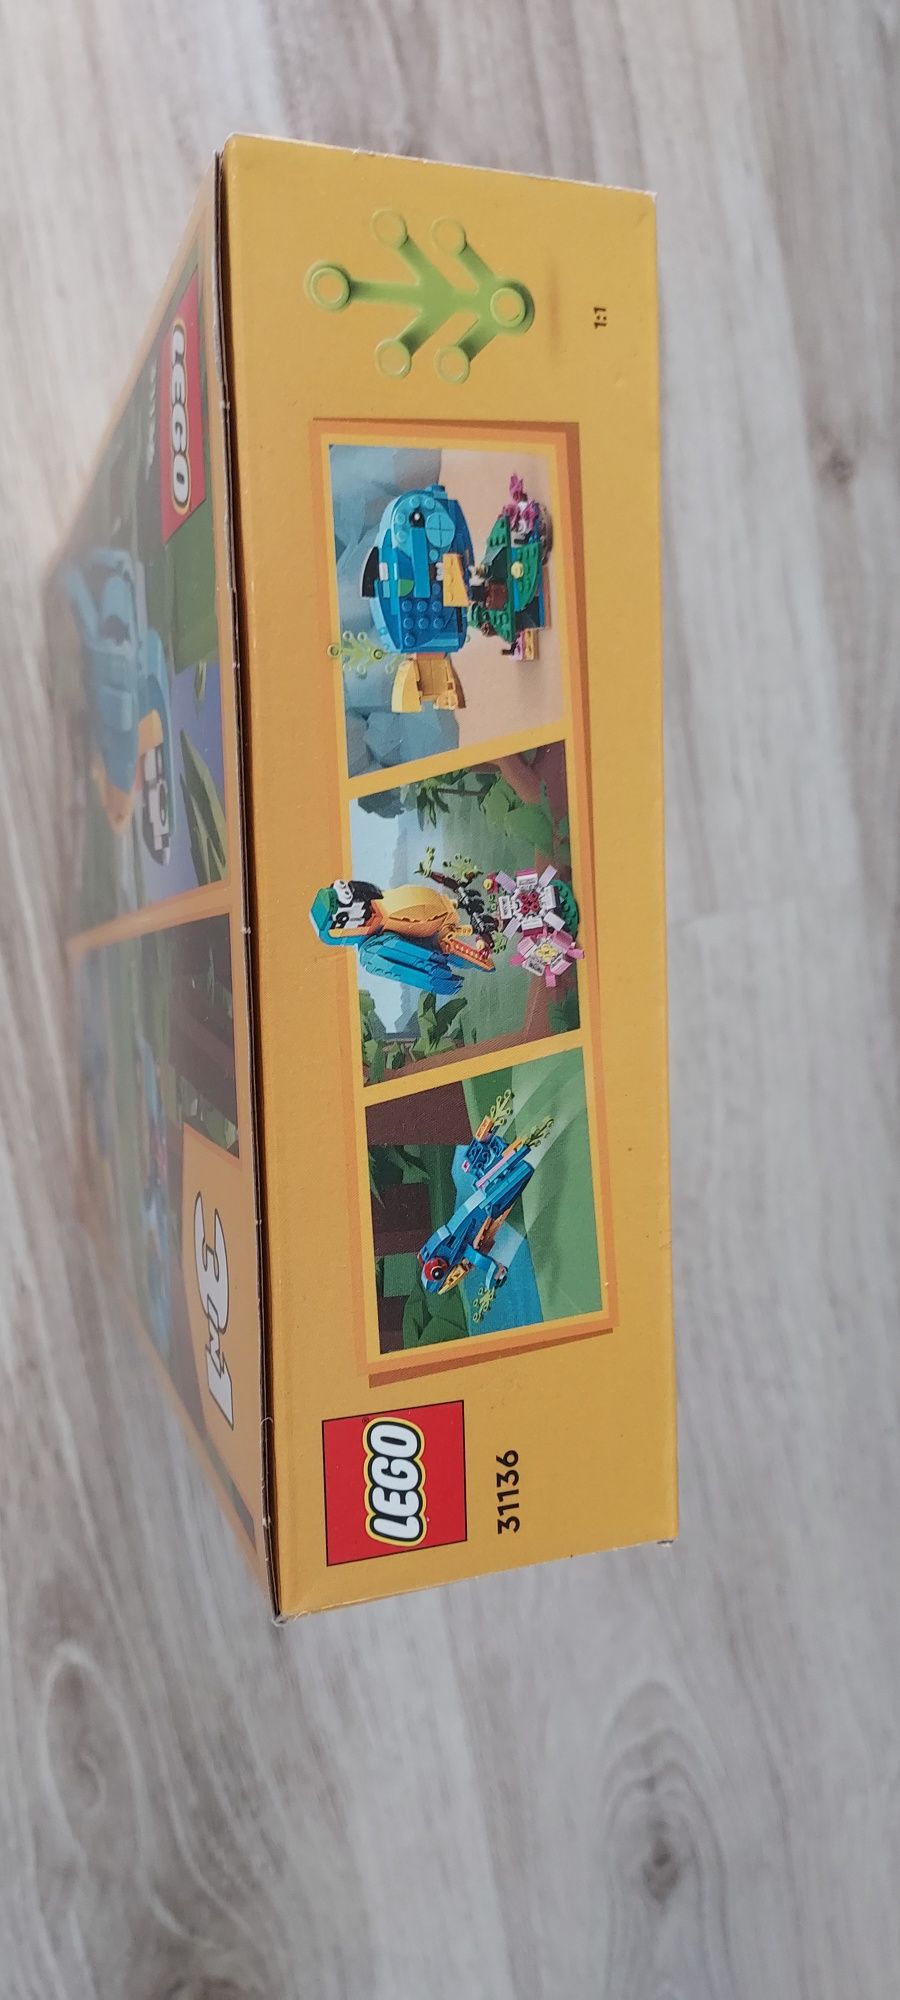 NOWE Lego 3w1 egzotyczna papuga 1136